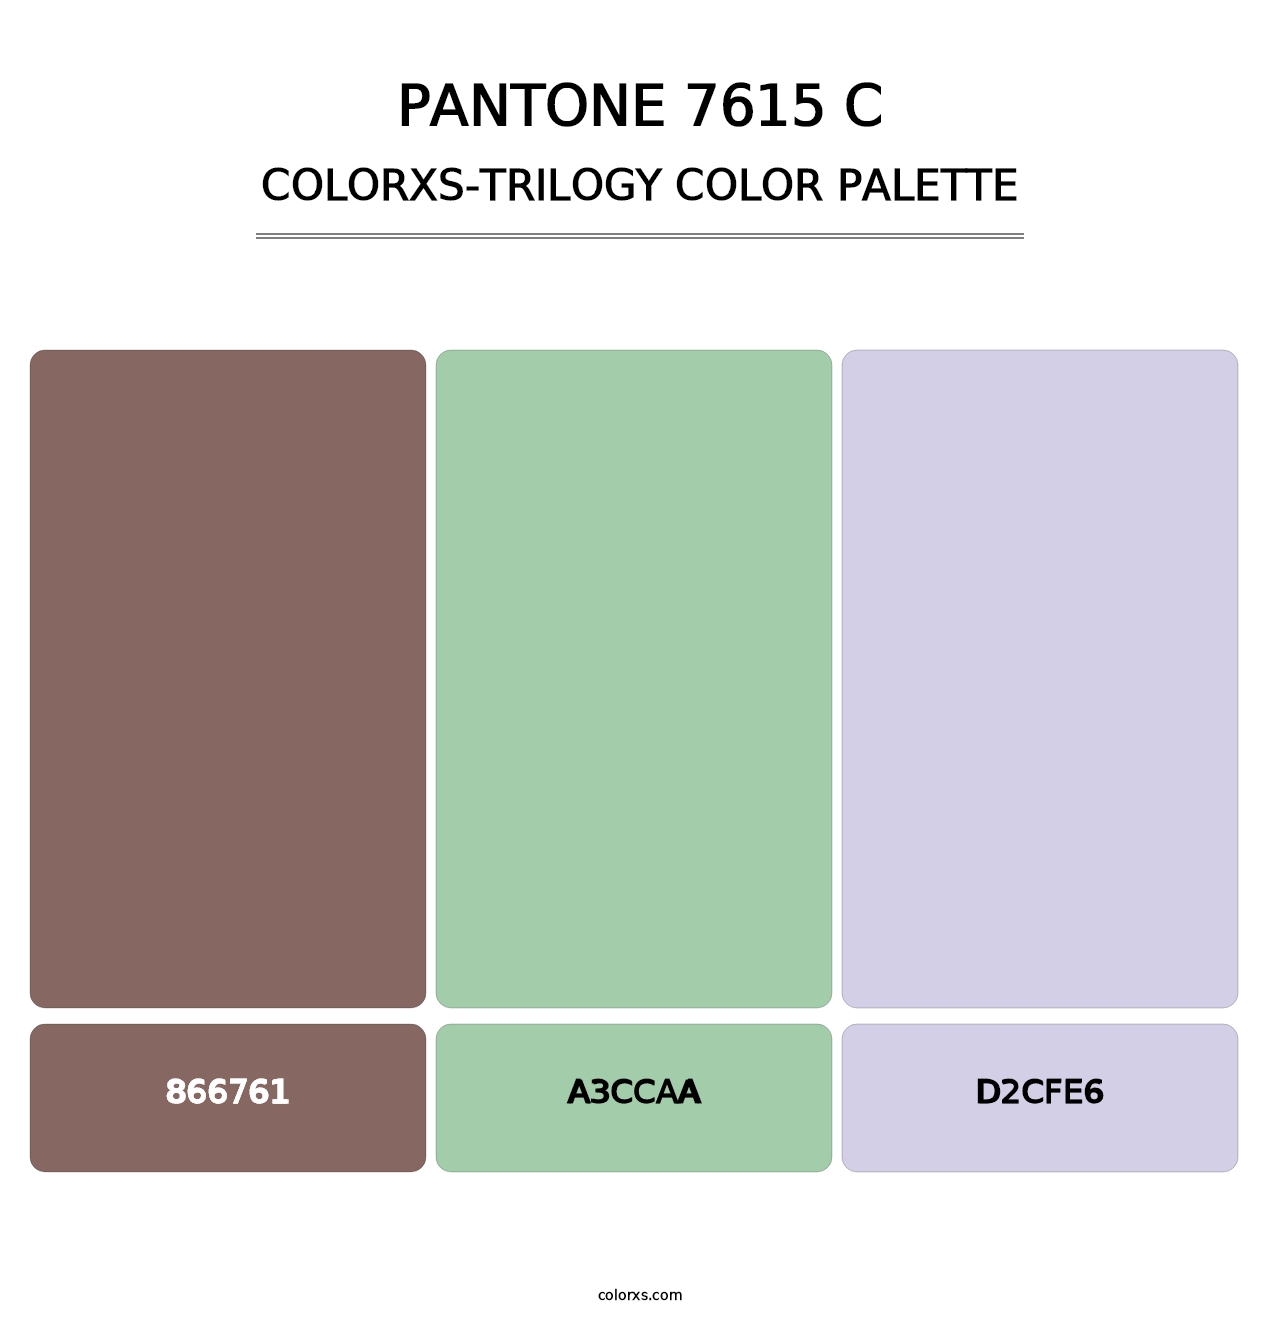 PANTONE 7615 C - Colorxs Trilogy Palette